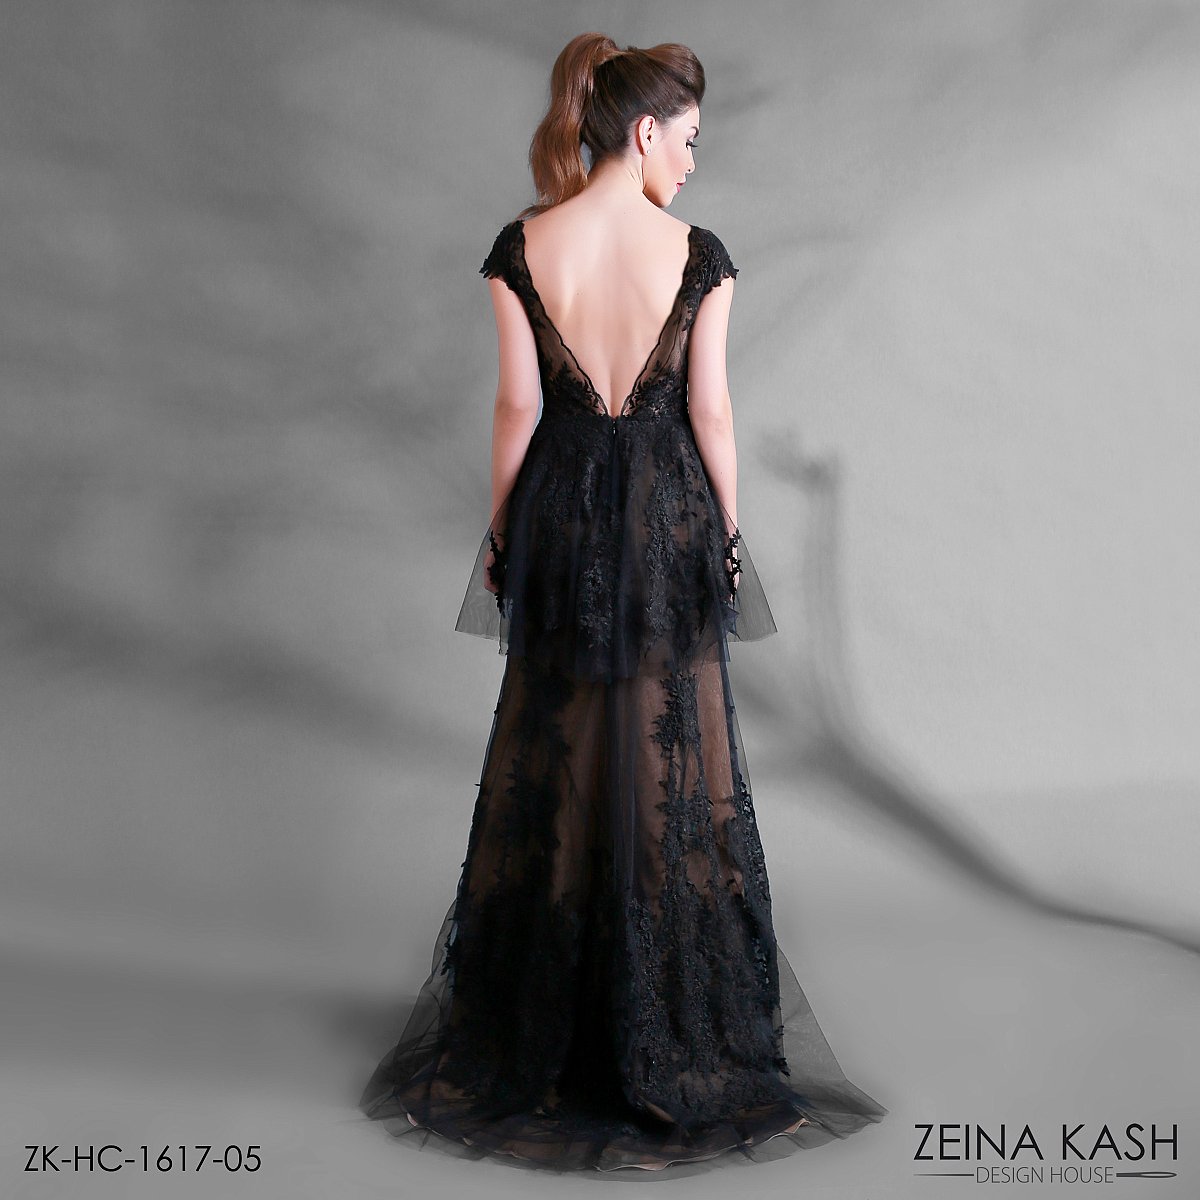 Zeina Kash Automne-hiver 2016-2017 - Haute couture - 1